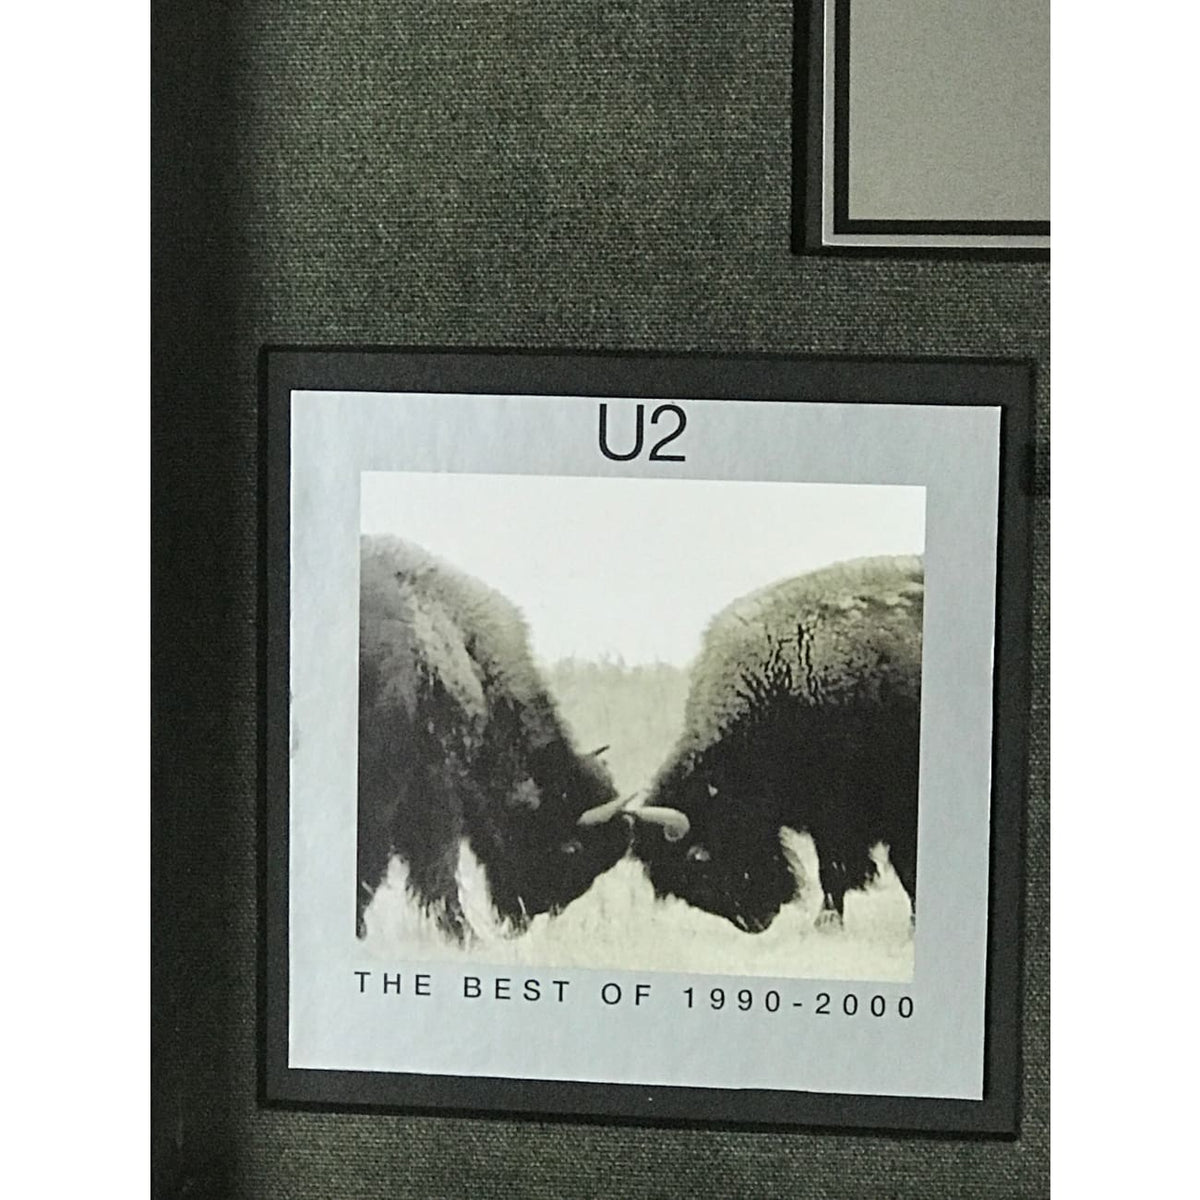 U2 The Best Of 1990-2000 RIAA Platinum Album Award